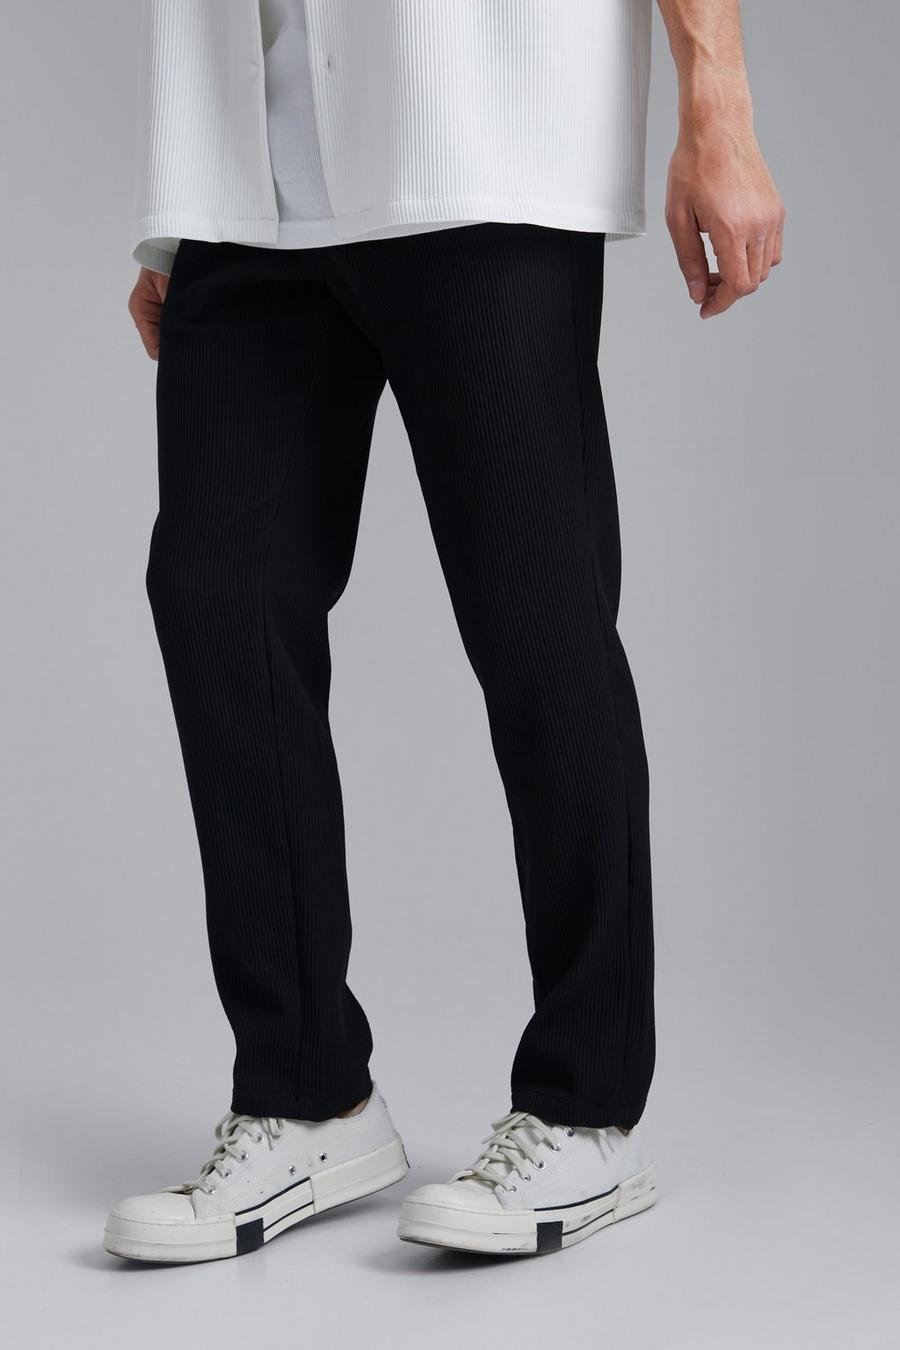 Pantalon court plissé, Black schwarz